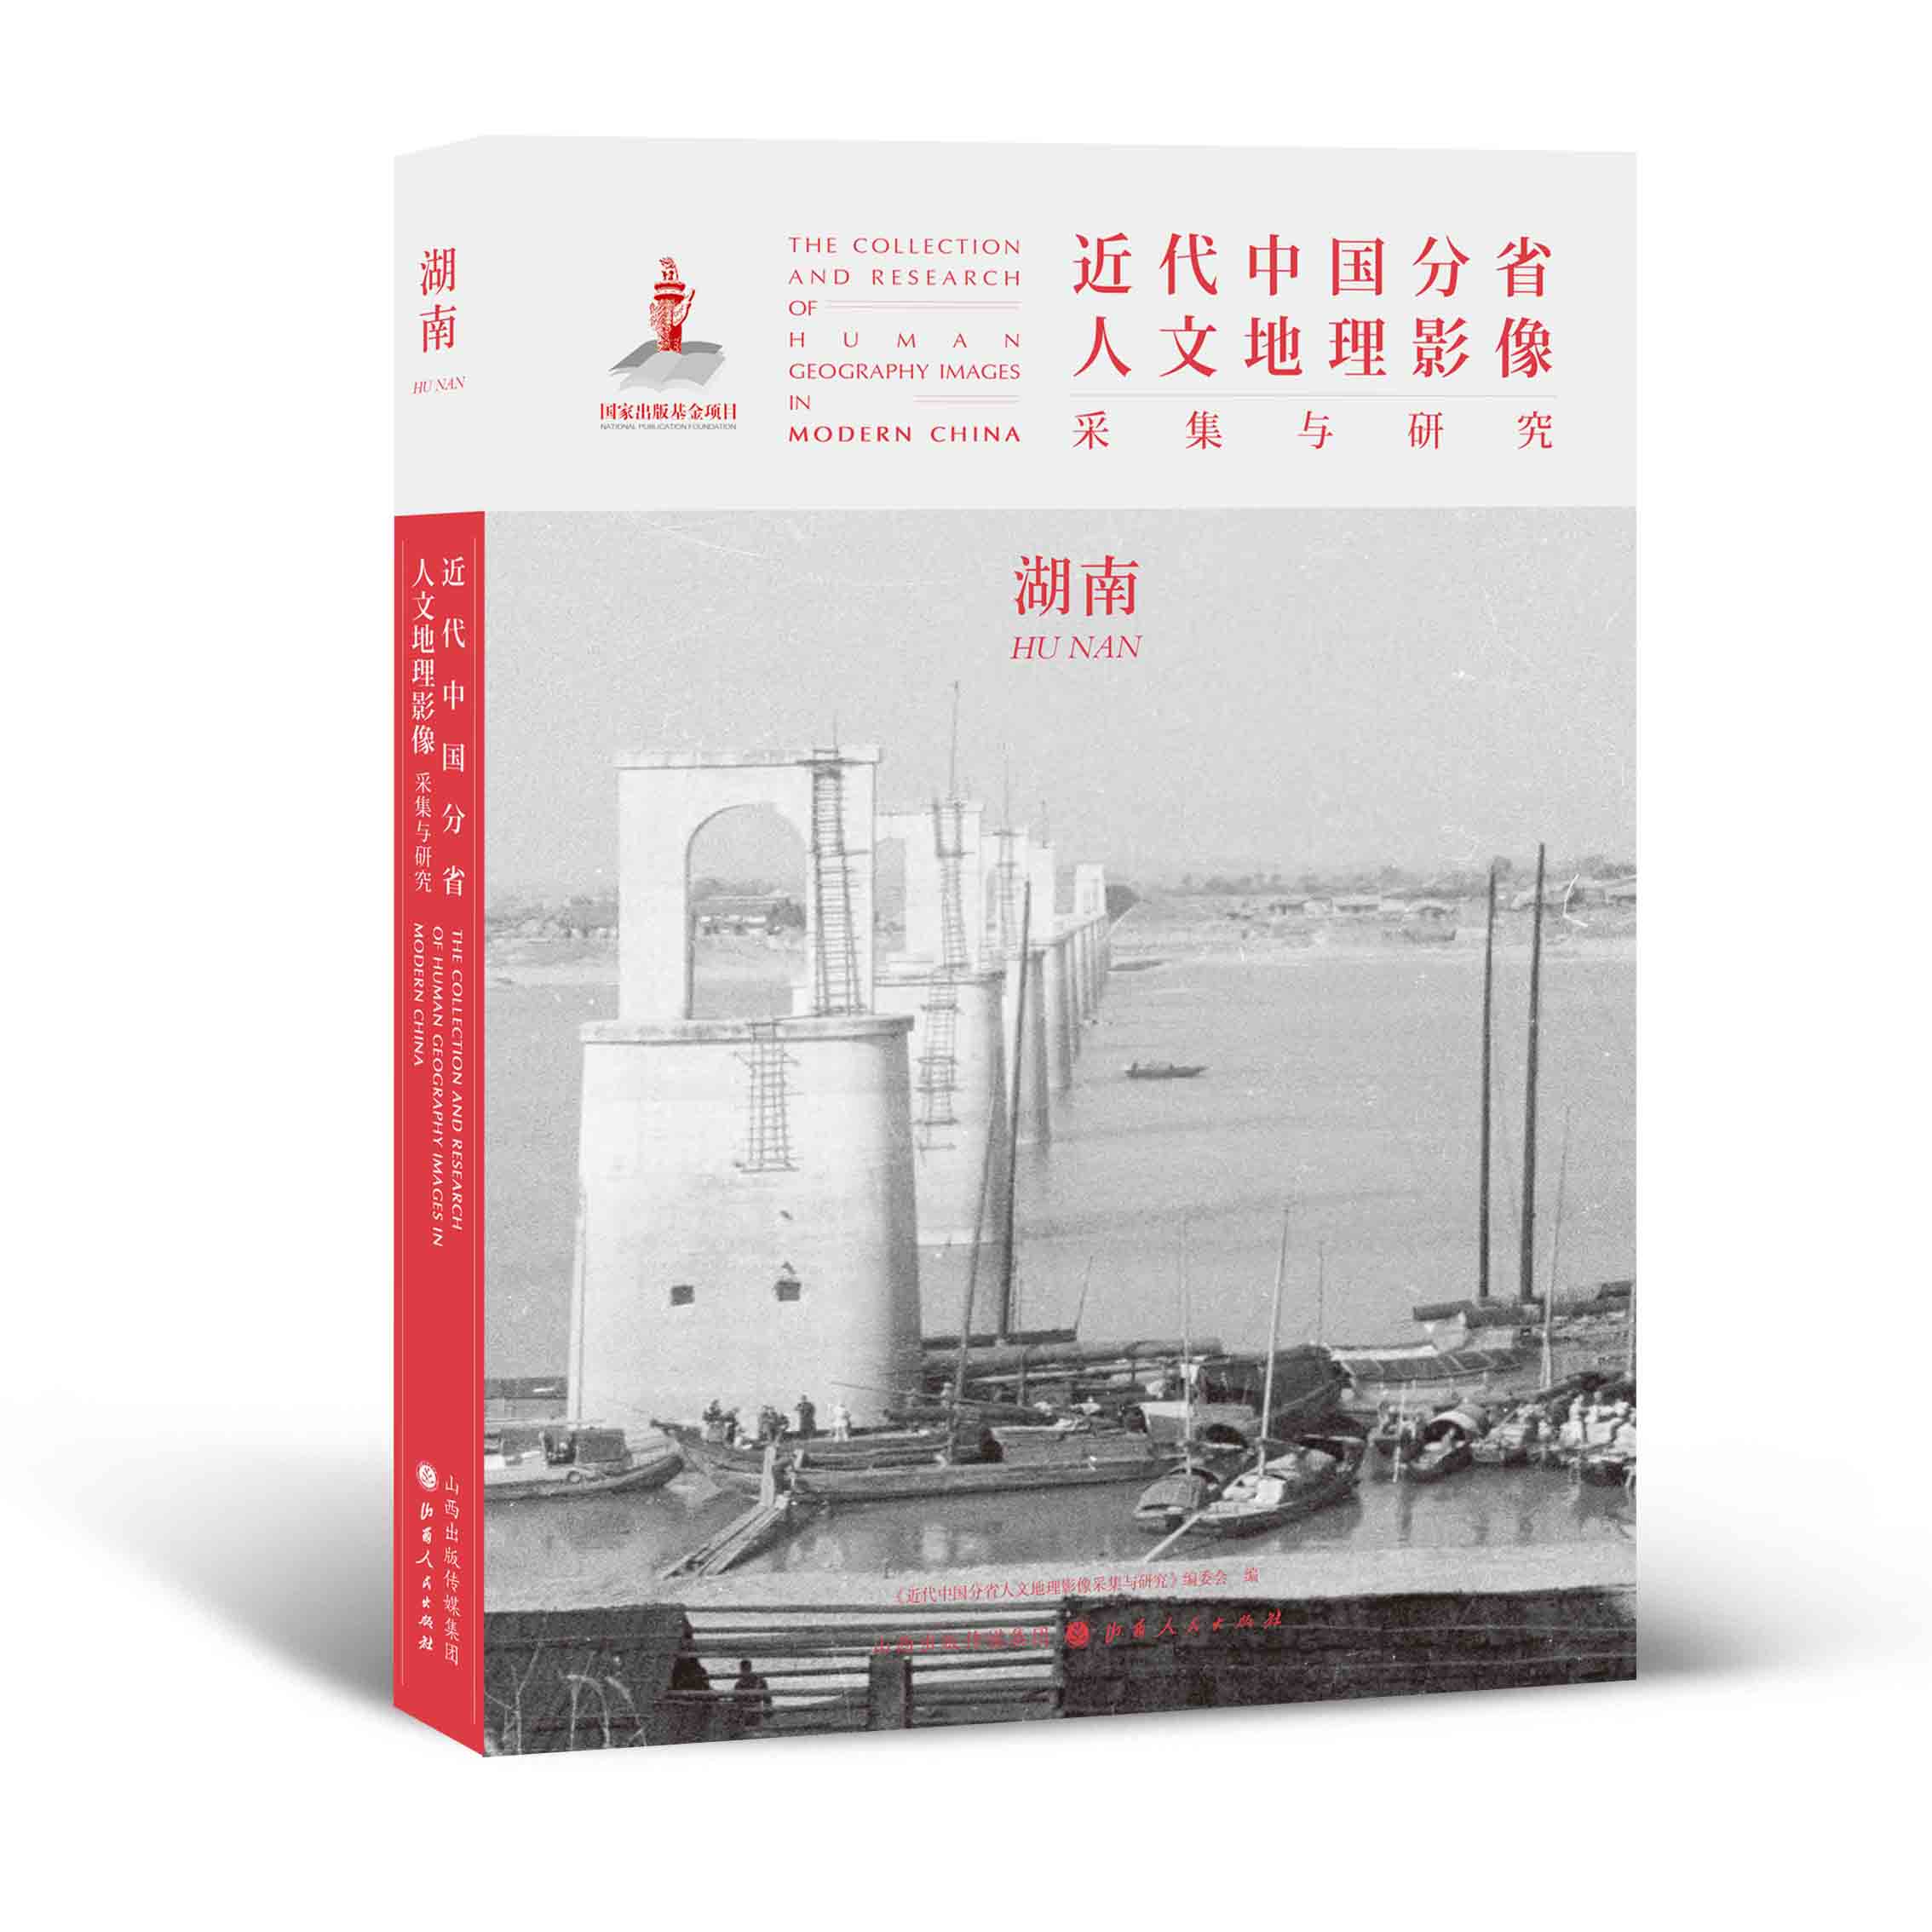 正版包邮 近代中国分省人文地理影像采集与研究 湖南 国家出版基金项目 全球采集 用图像读懂中国近代史 近代中国的影像读本